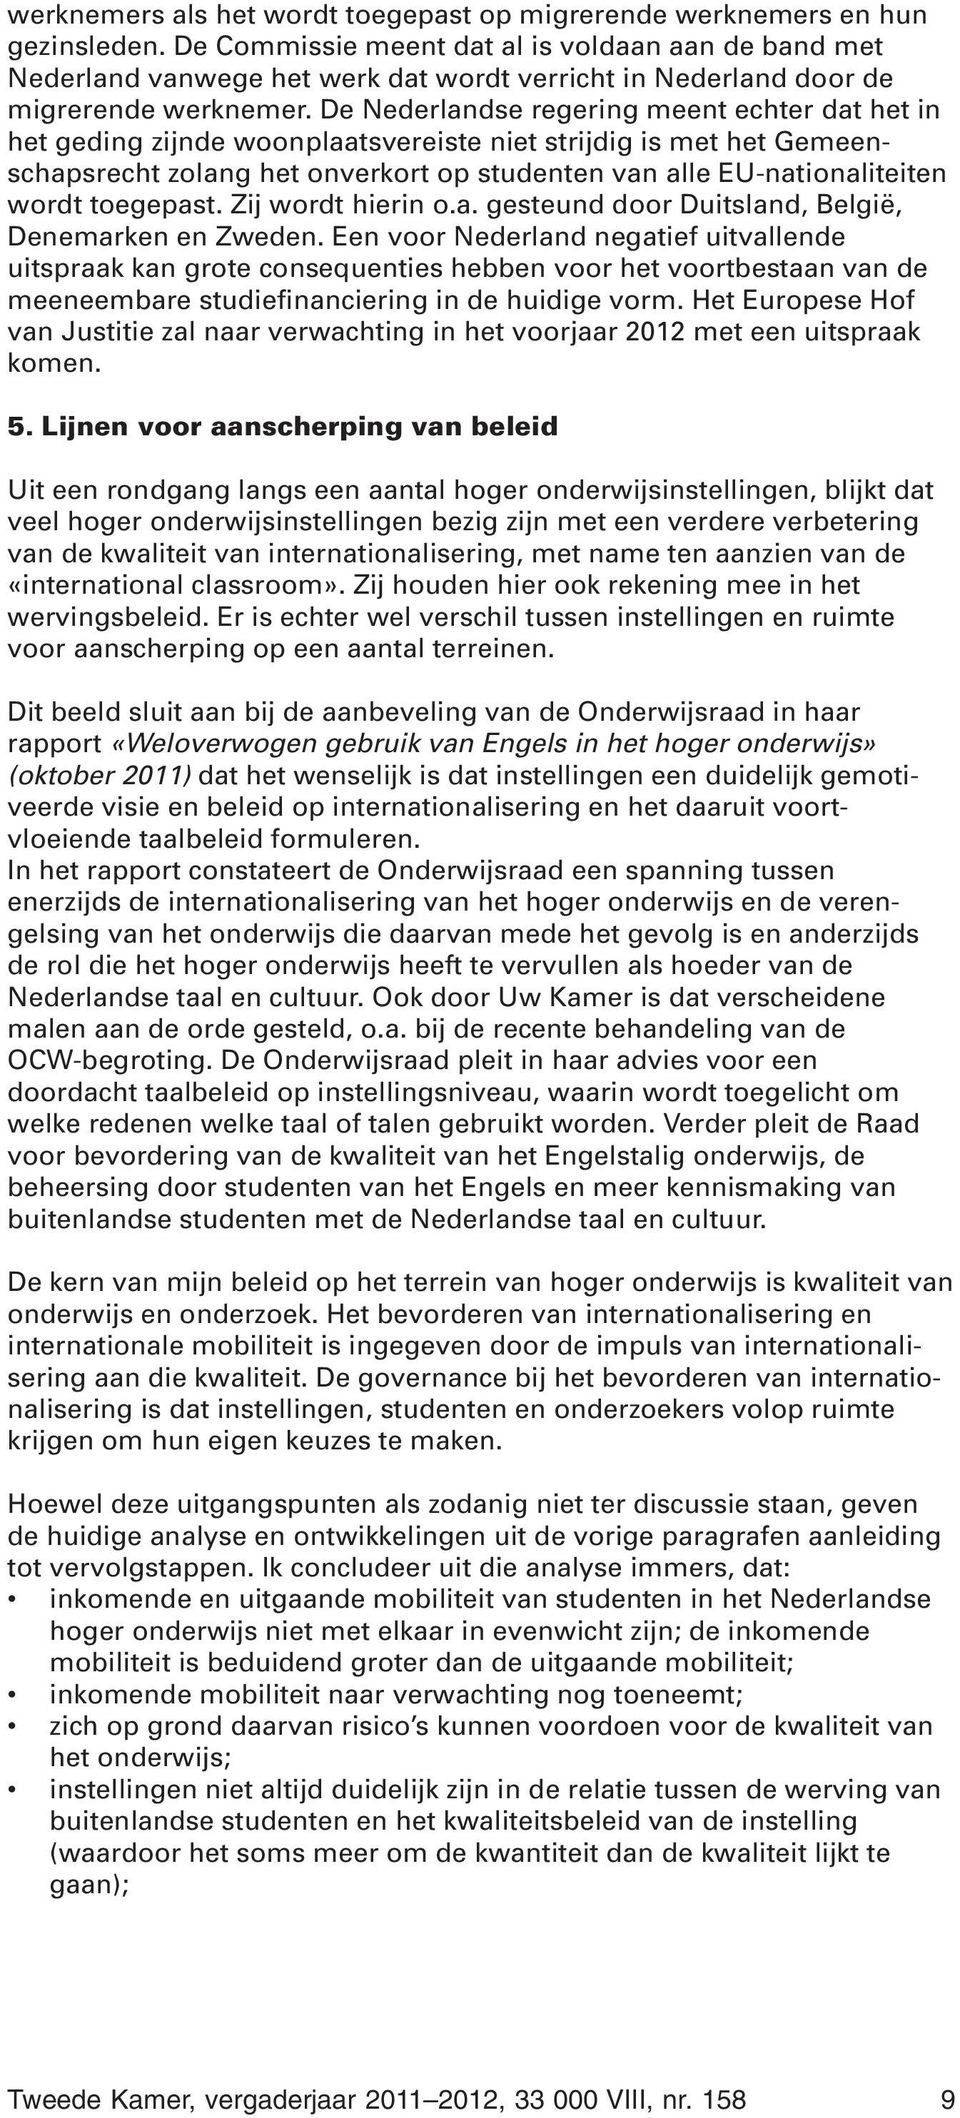 De Nederlandse regering meent echter dat het in het geding zijnde woonplaatsvereiste niet strijdig is met het Gemeenschapsrecht zolang het onverkort op studenten van alle EU-nationaliteiten wordt